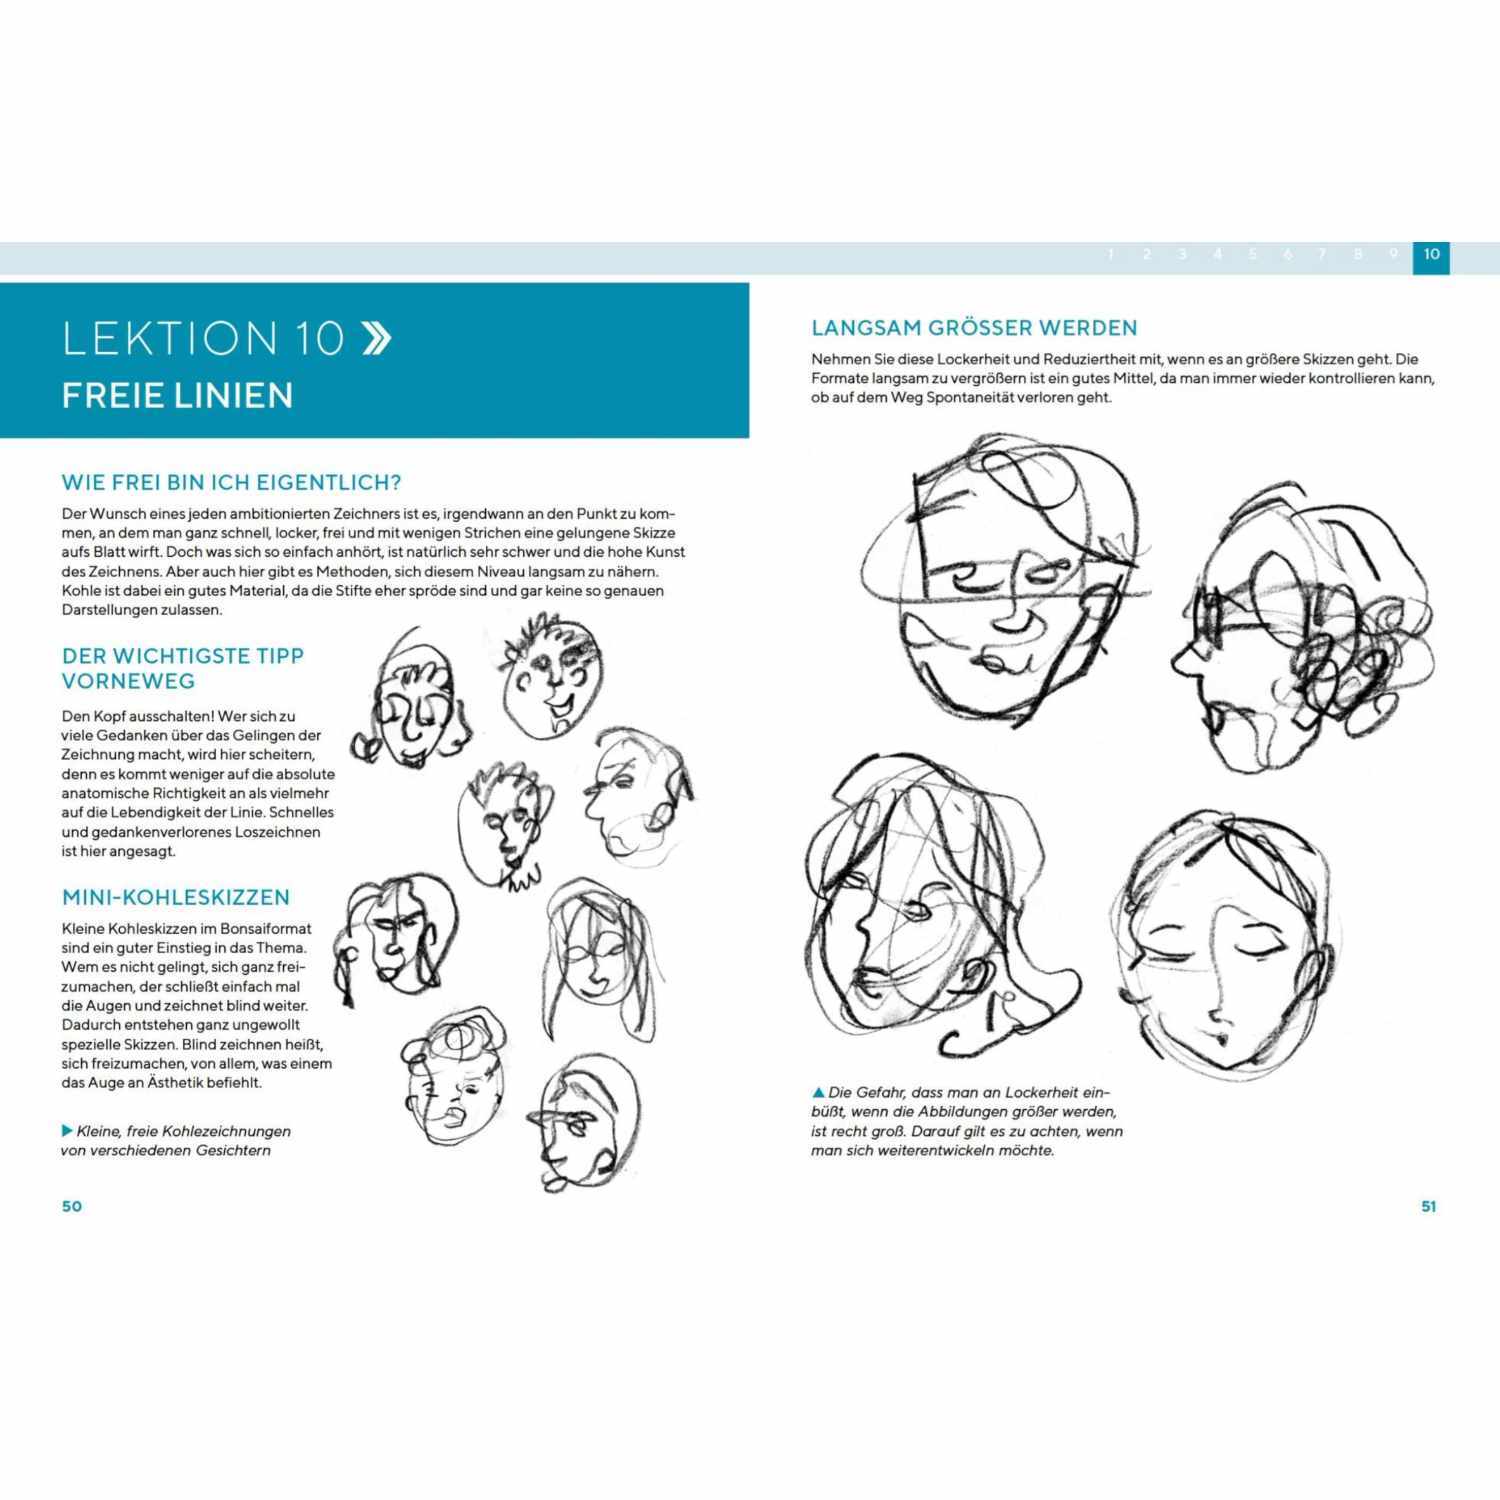 Gesichter Zeichnen - Schnelles Wissen in 30 Minuten